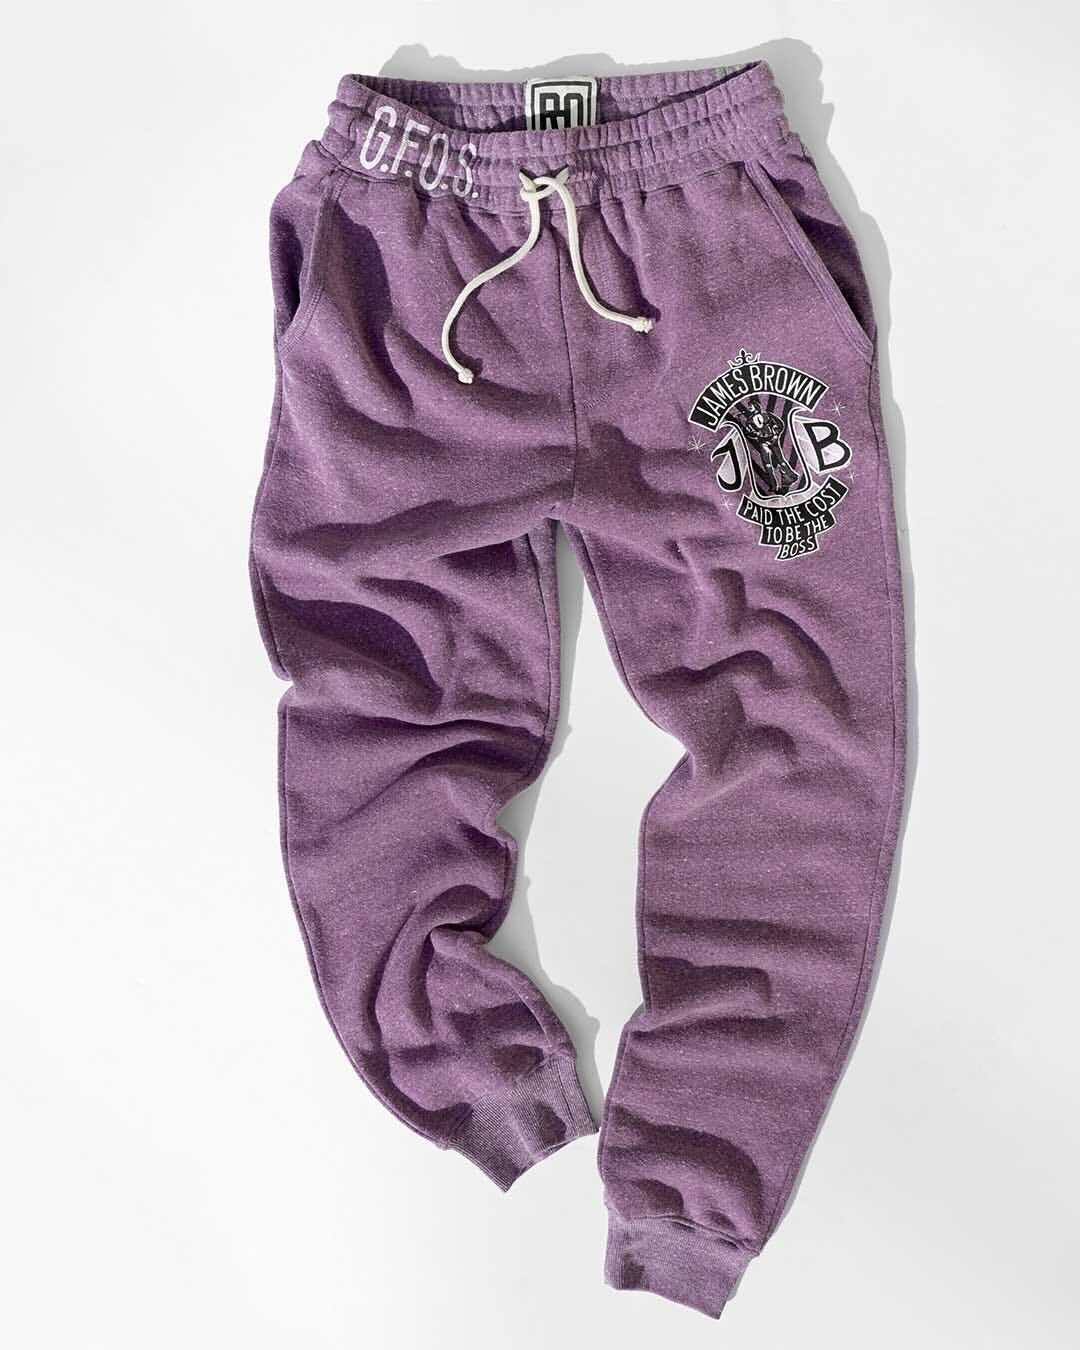 Apana purple jogger pants - Gem